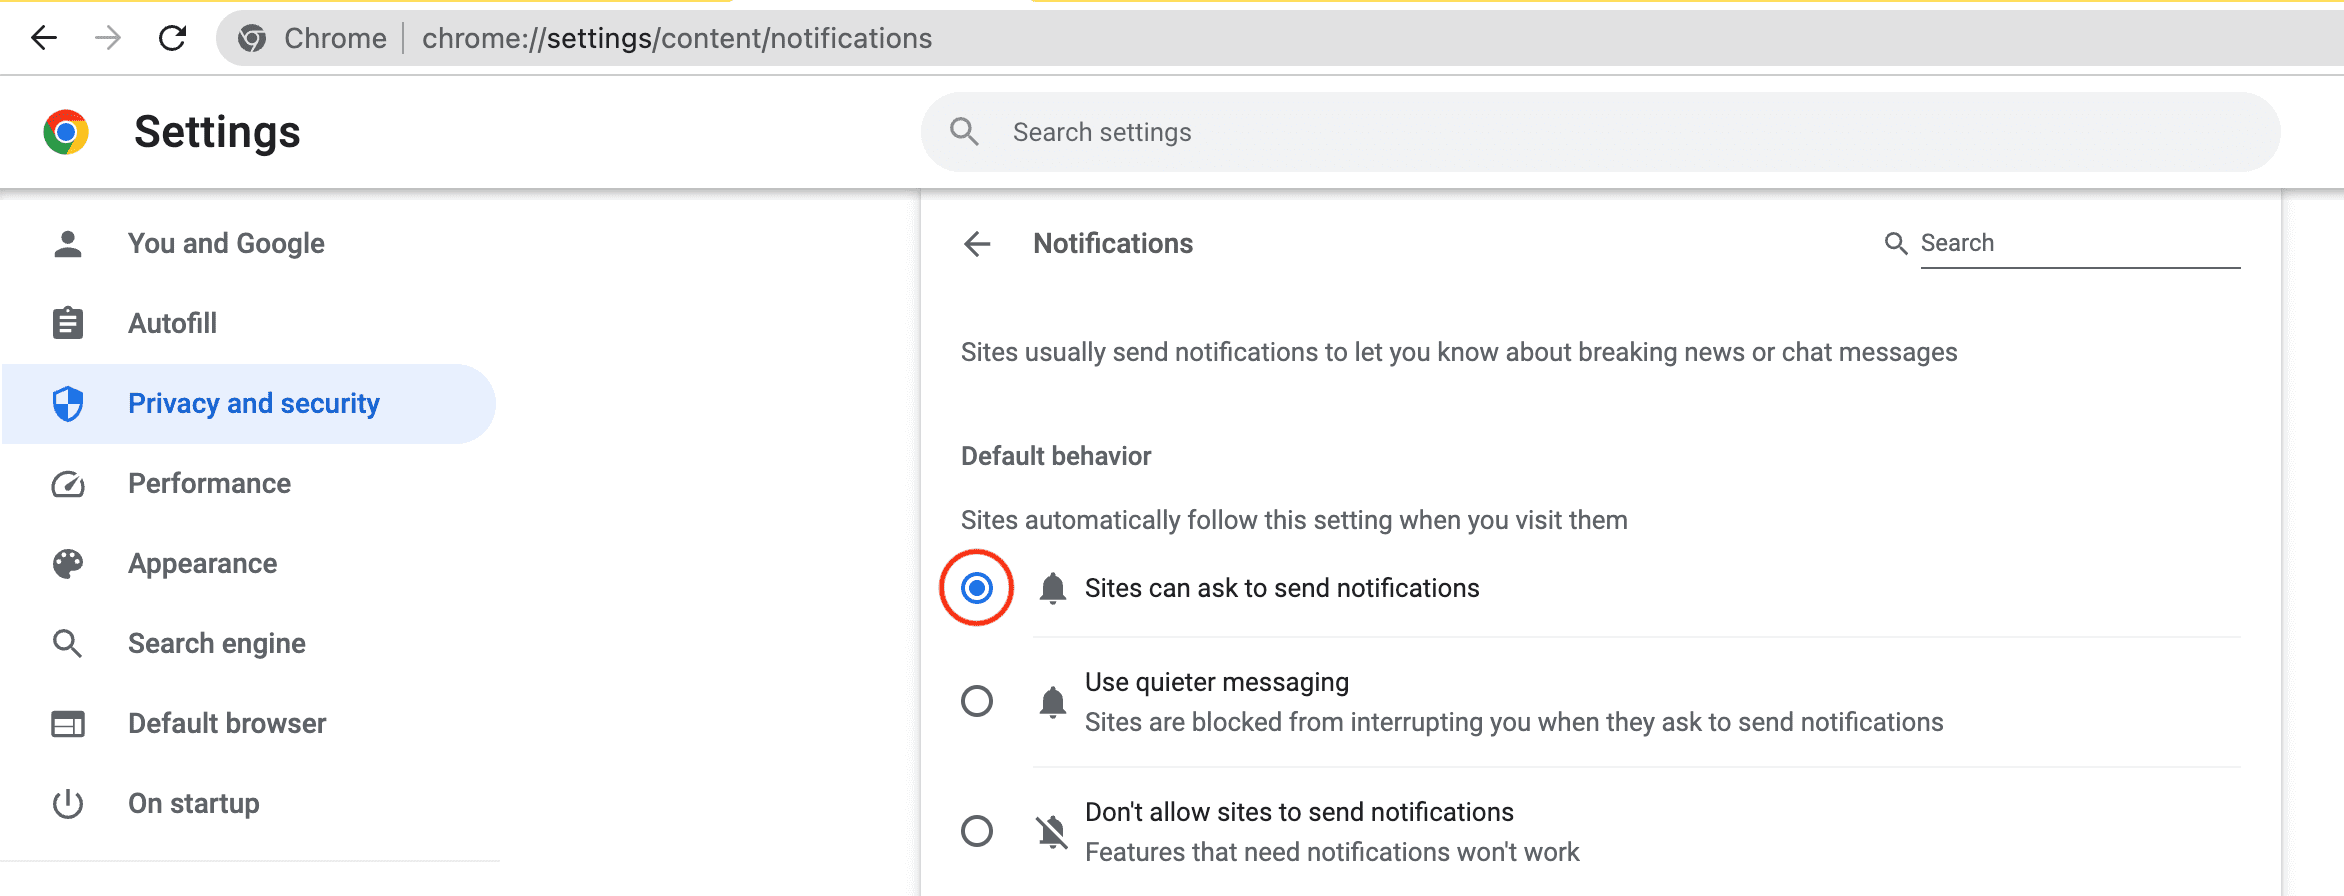 Situs dapat meminta untuk mengirimkan notifikasi di Chrome